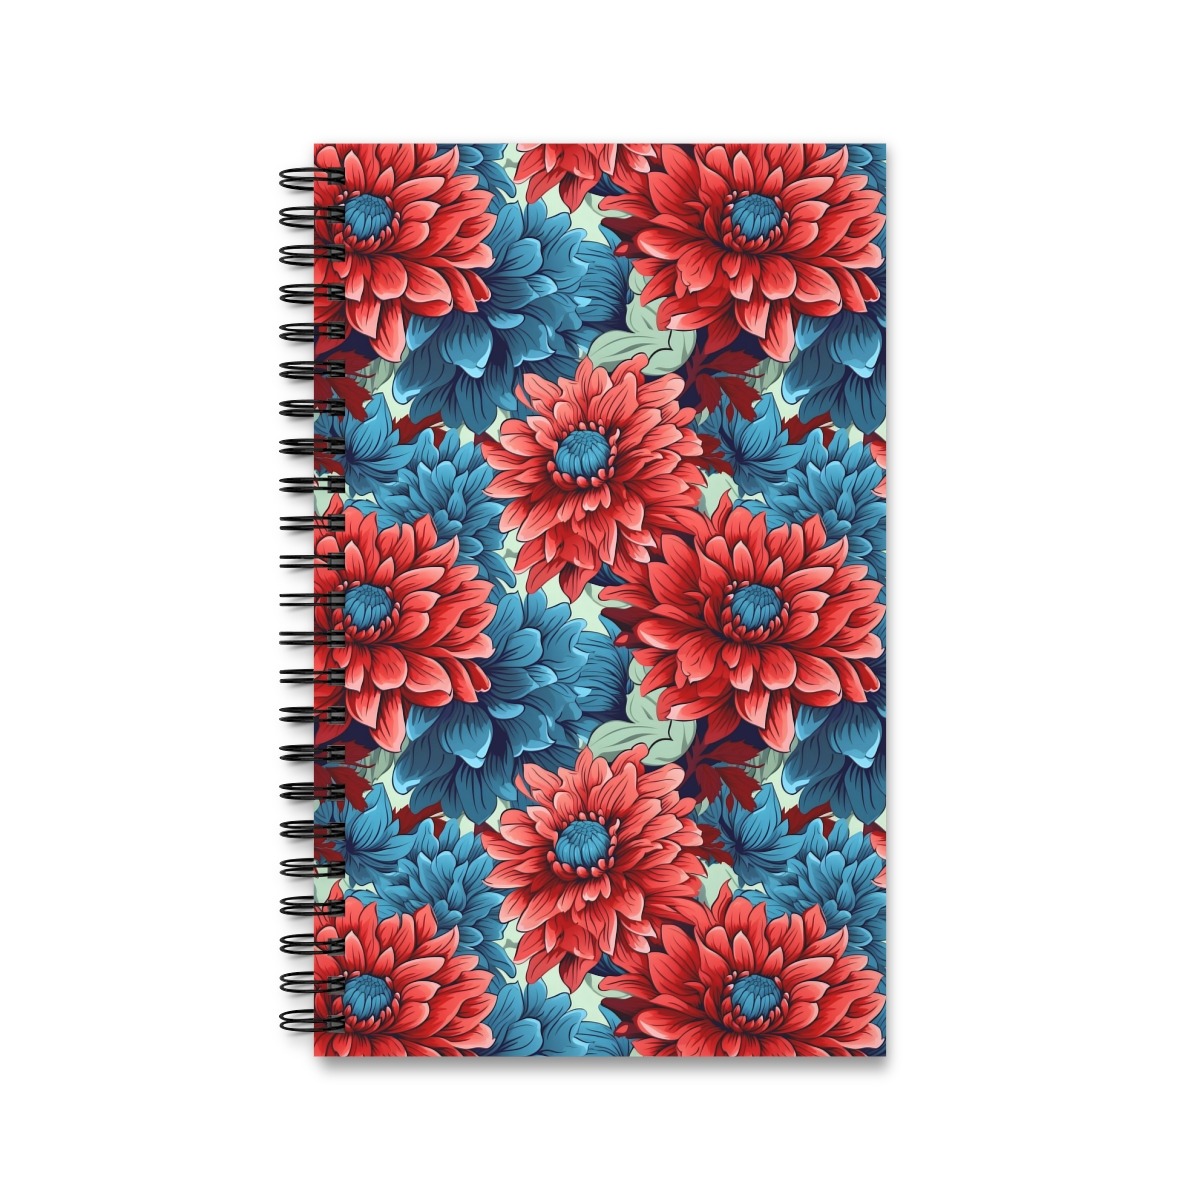 Aquarell Notizbuch mit buntem Blumenmuster - Ringbindung, Varianten: Blank, Linie, Punktraster, Planer